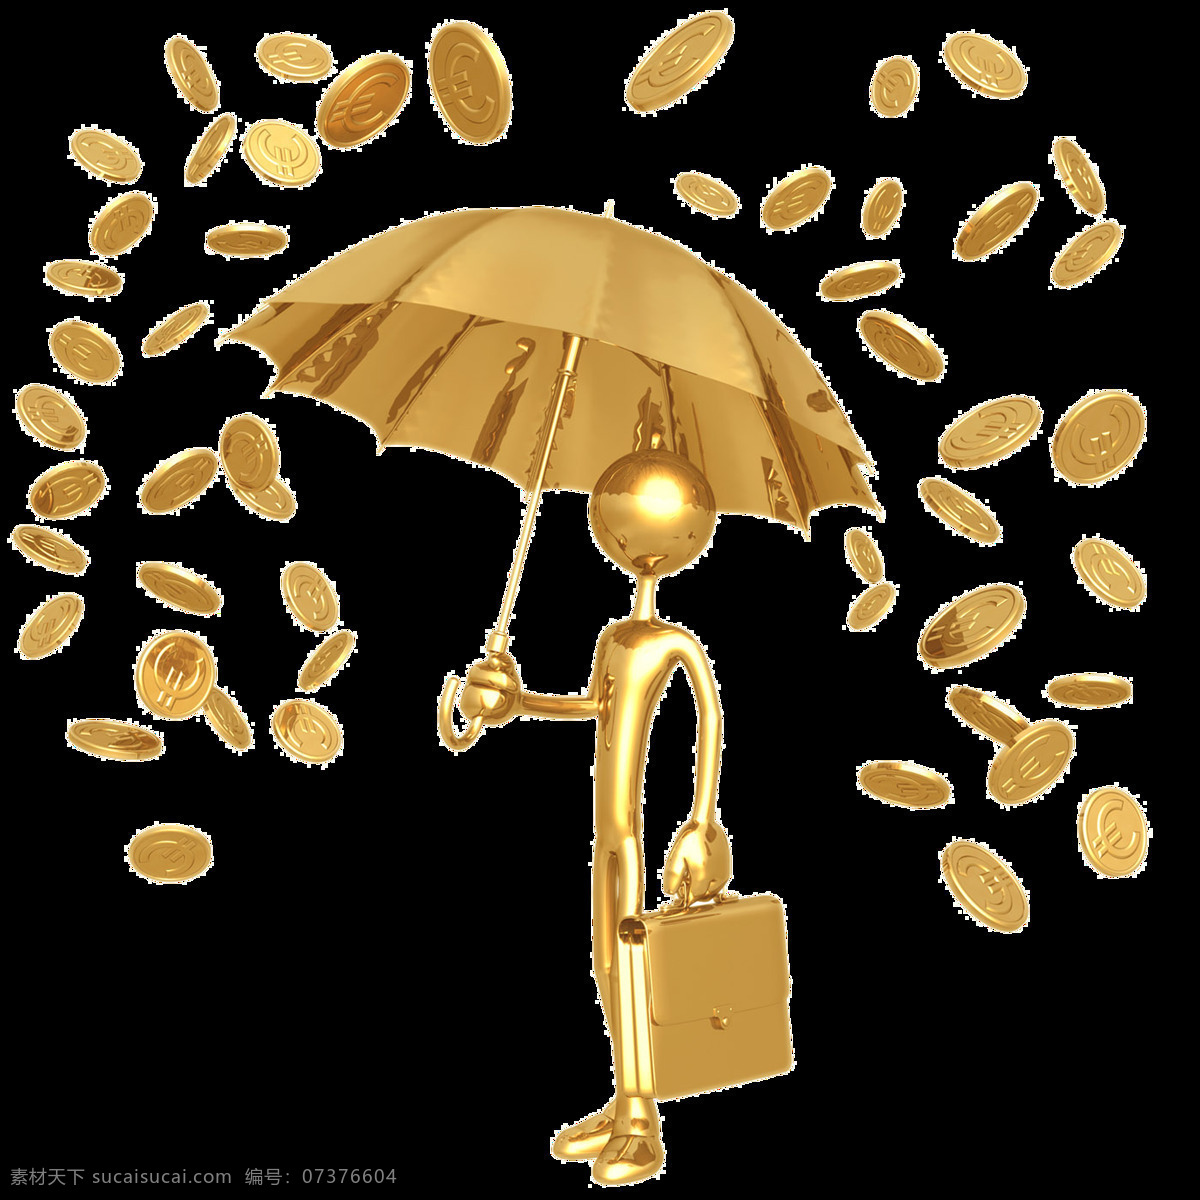 小金人 金币 金色 金钱 钱币 铜钱 金人 透明背景 透明金人 雨伞 金色雨伞 金色包